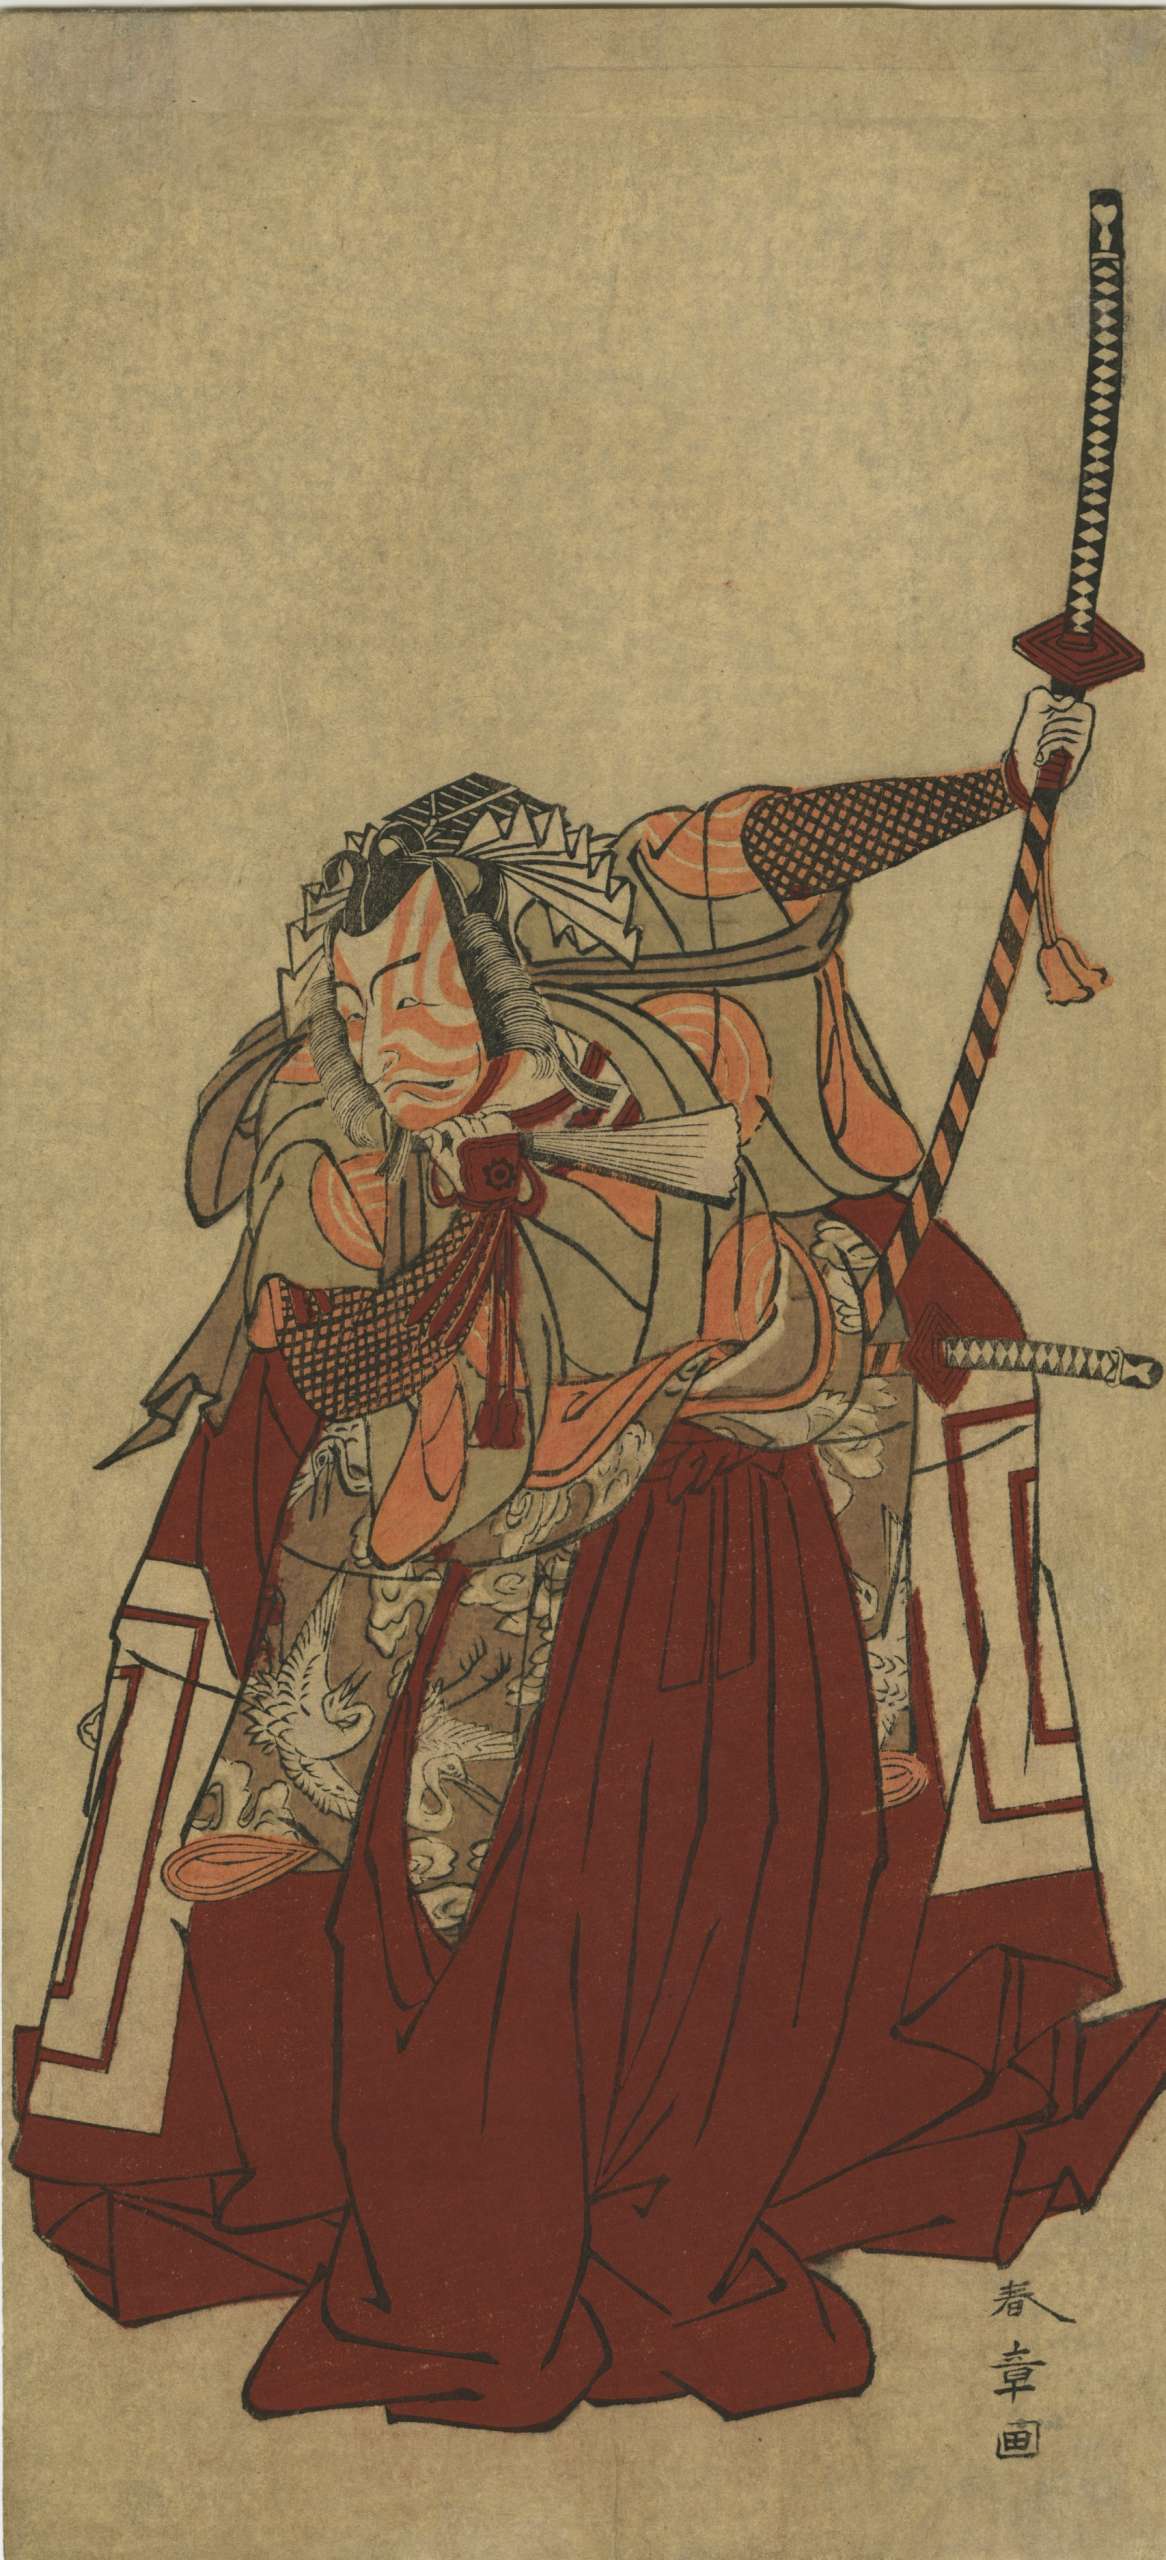 Katsukawa Shunshō. Itchikawa Danjuro V in Shibaraku as Kamakura Gongoro Kagemasa. Circa 1770's.